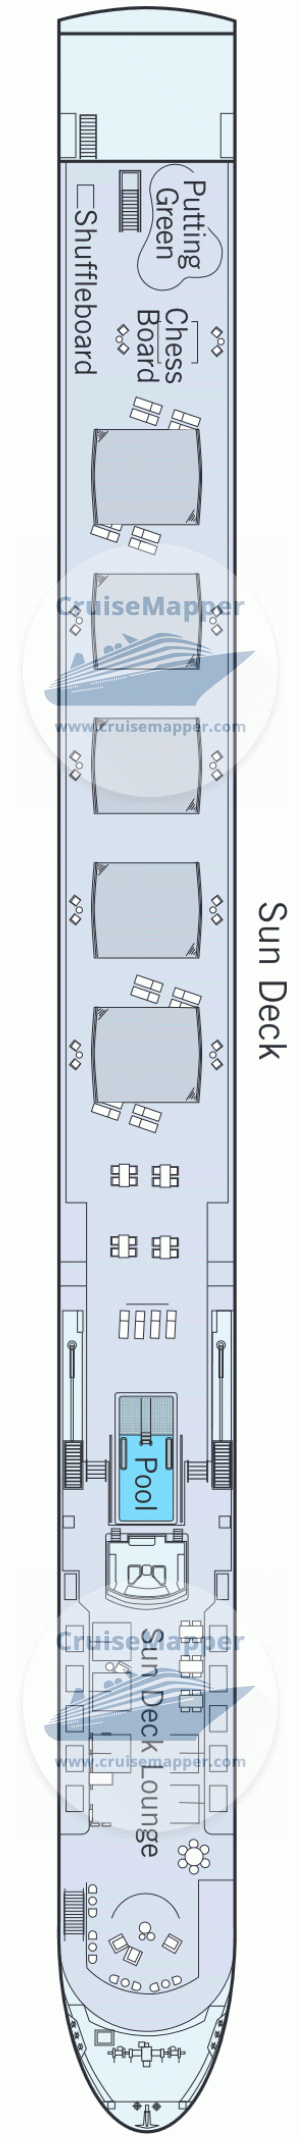 MS Amadeus Nova Deck 04 - Sundeck-Pool